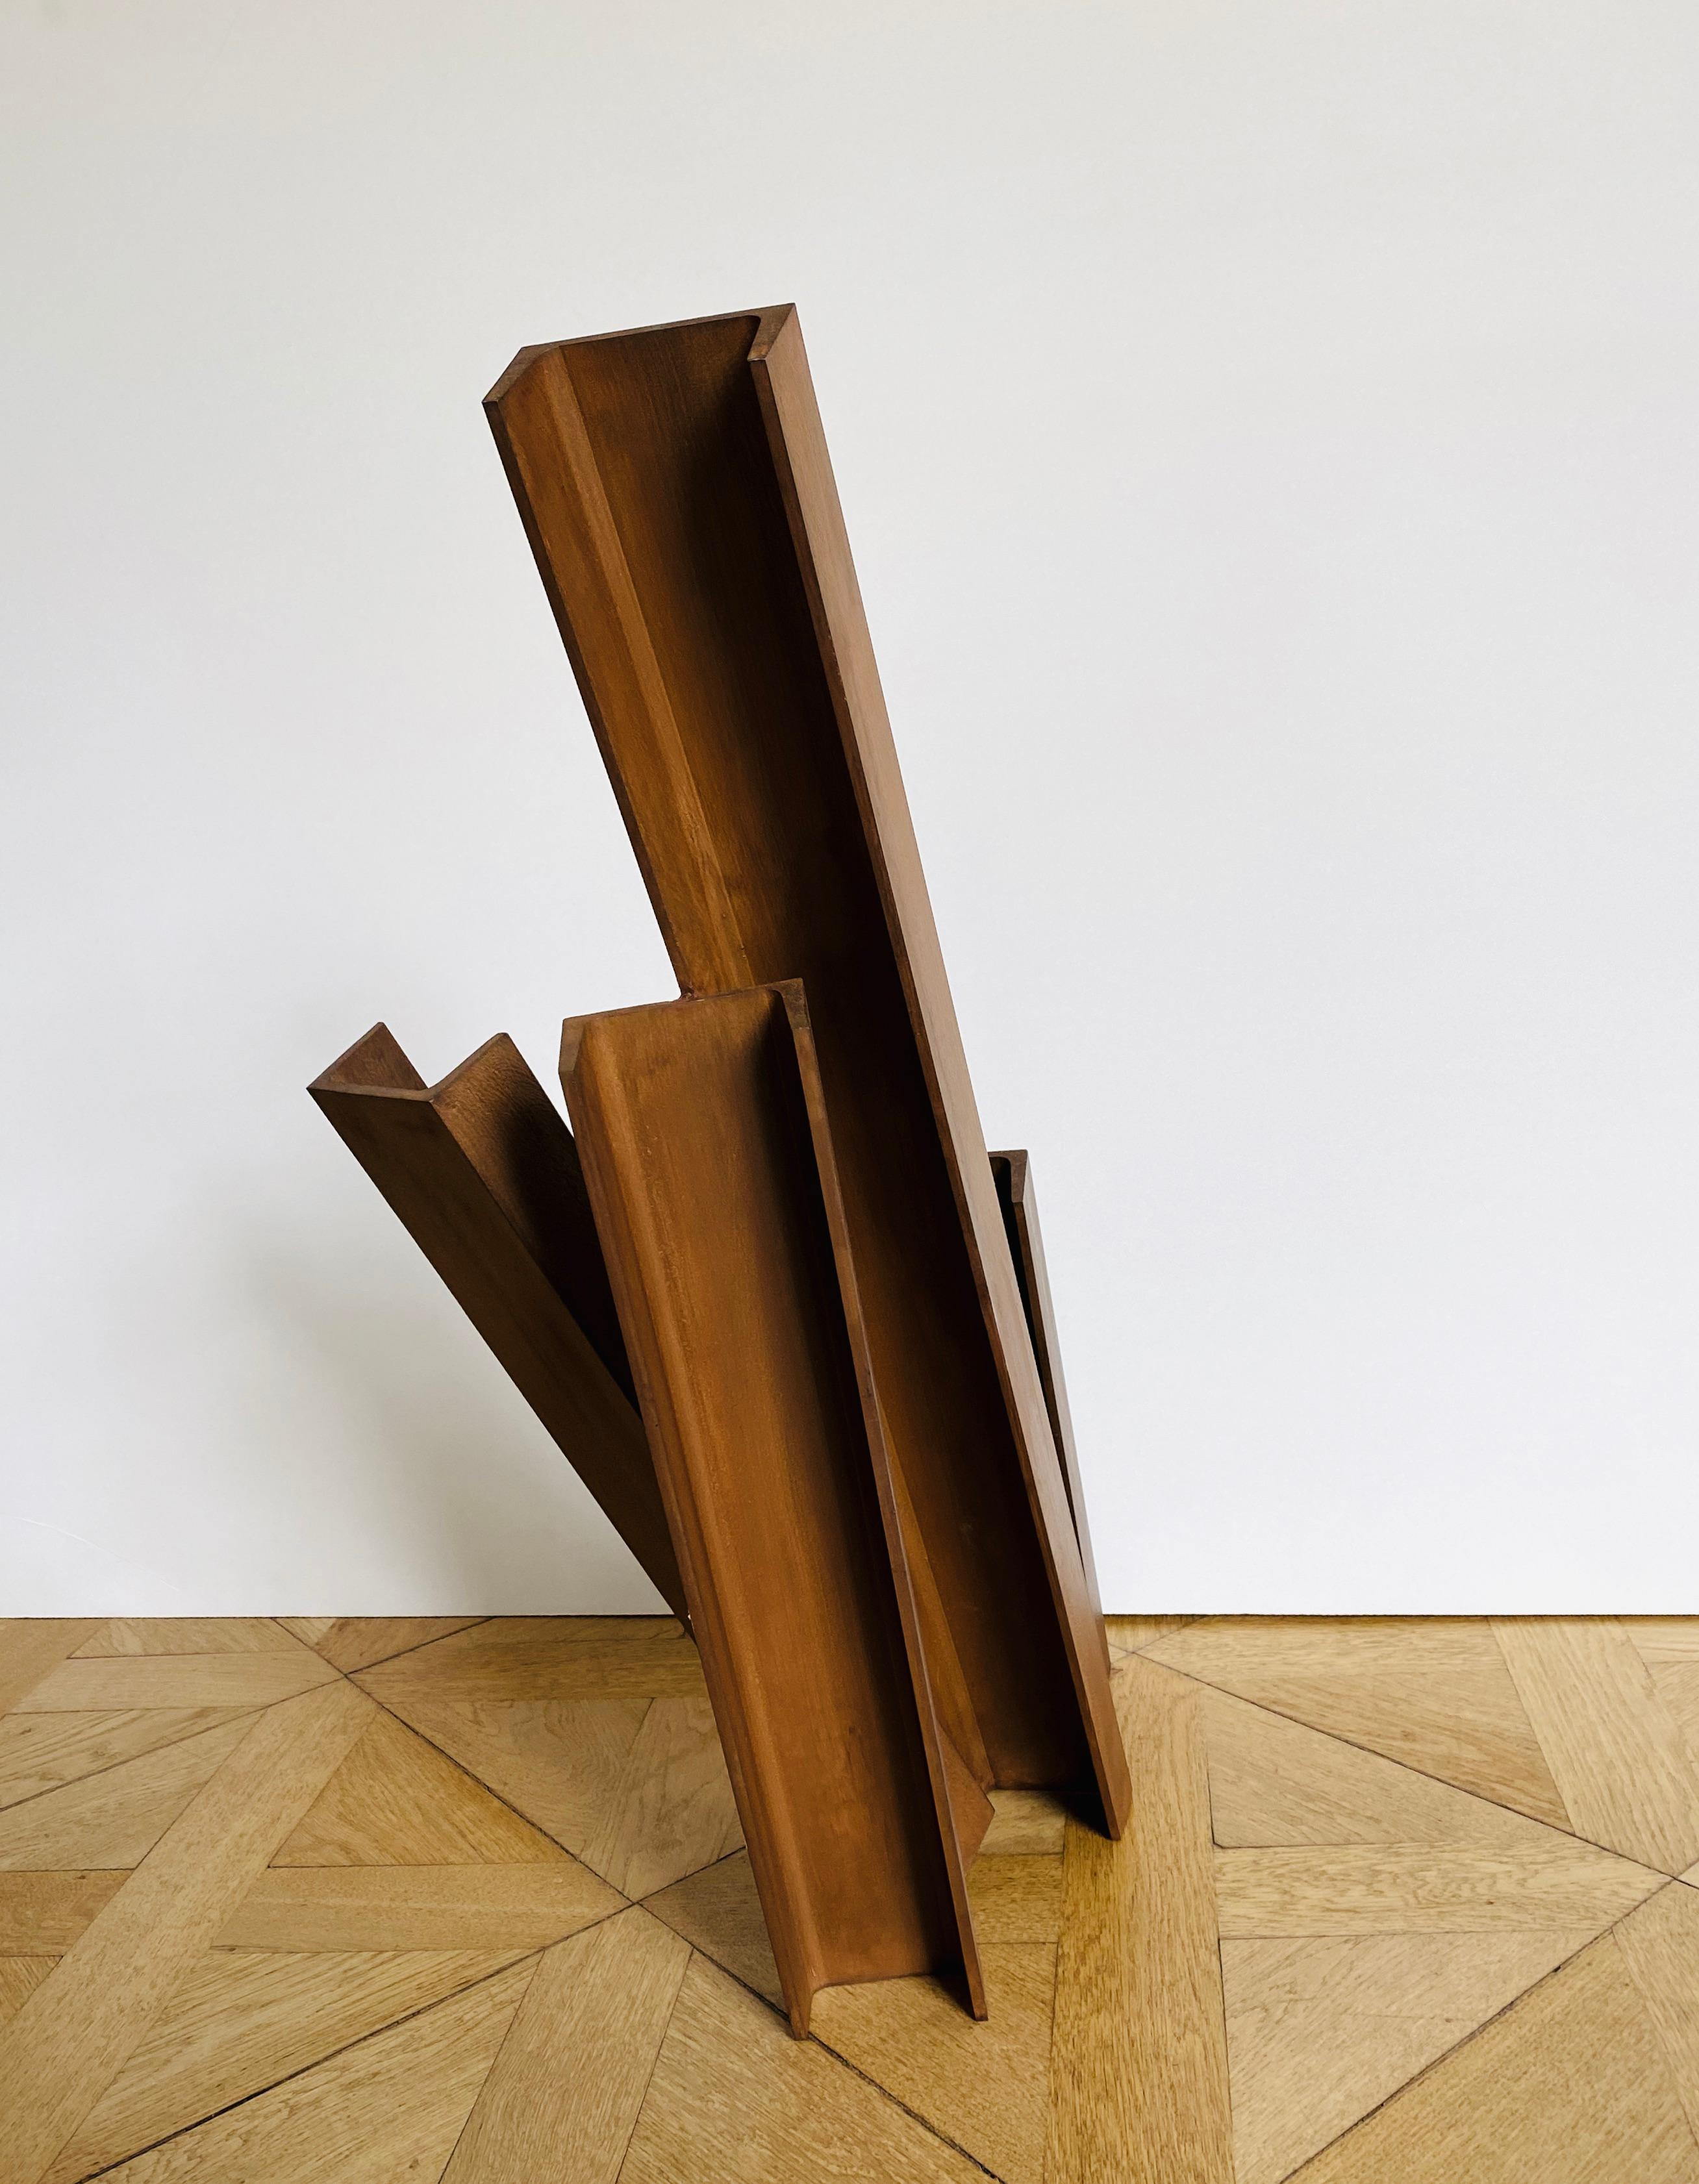 Etienne Viard
Manhatten, 2017
Cor-Ten- Acier
h = 79 cm  h = 31 pouces
monoram et daté
EV/S 22

Le travail d'Etienne Viard est solidement ancré dans le mouvement minimaliste, au sein duquel Viard réduit le vocabulaire esthétique du minimalisme à un